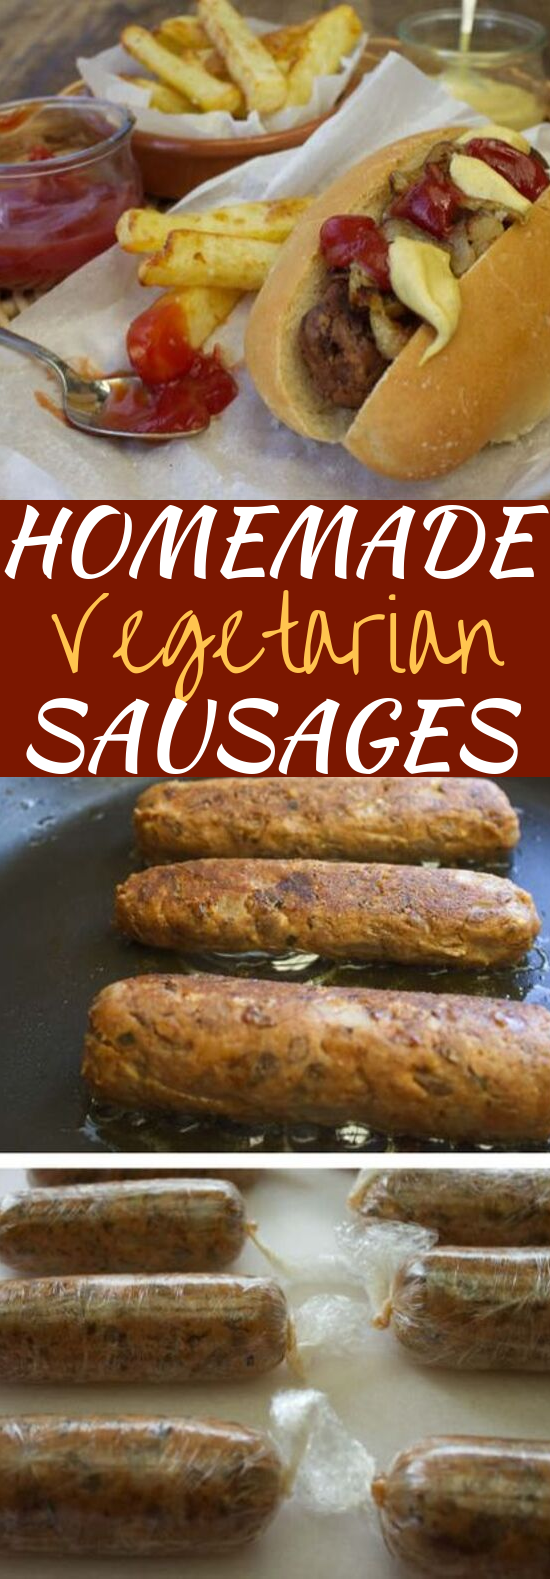 Homemade Vegetarian Sausages #vegetarian #vegan